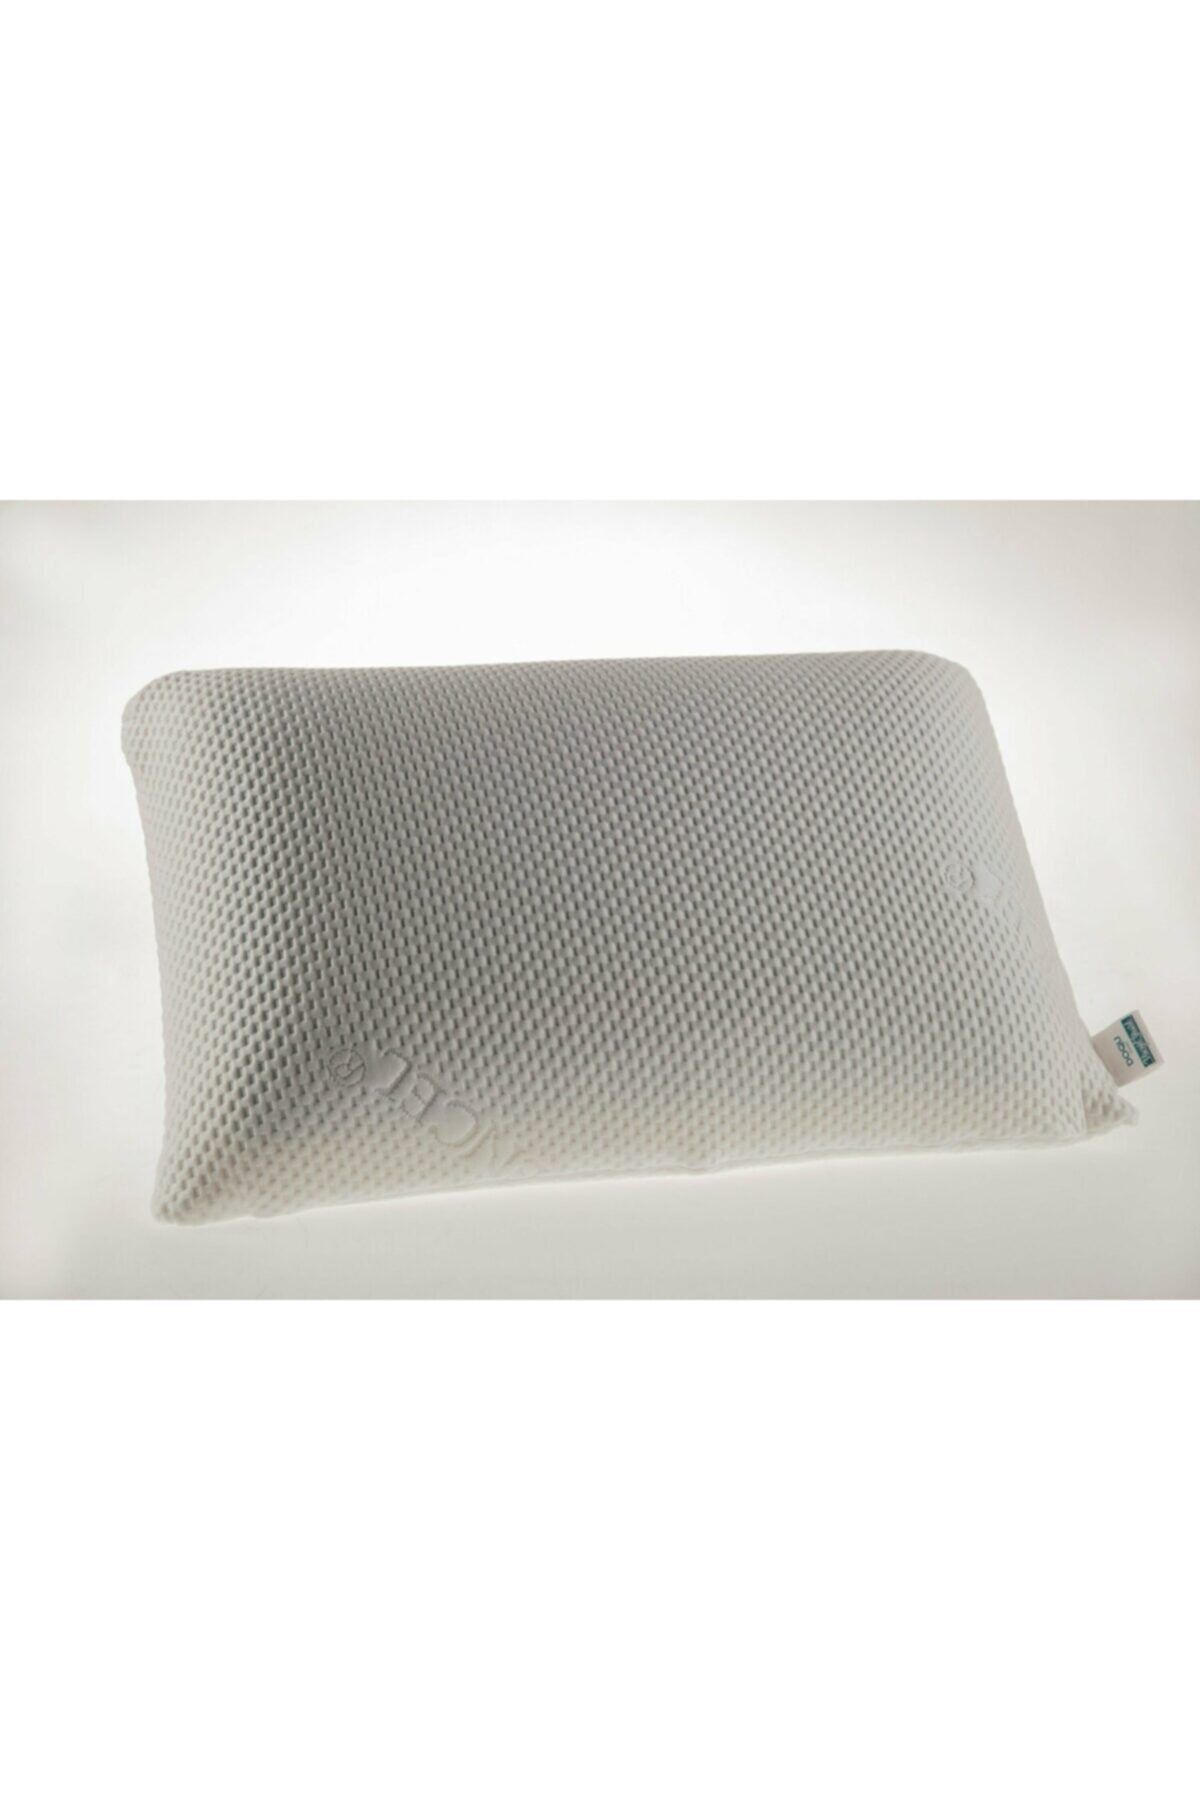 Doqu Home Viscojel Yastık Beyaz - 60 x 40 + 15 cm